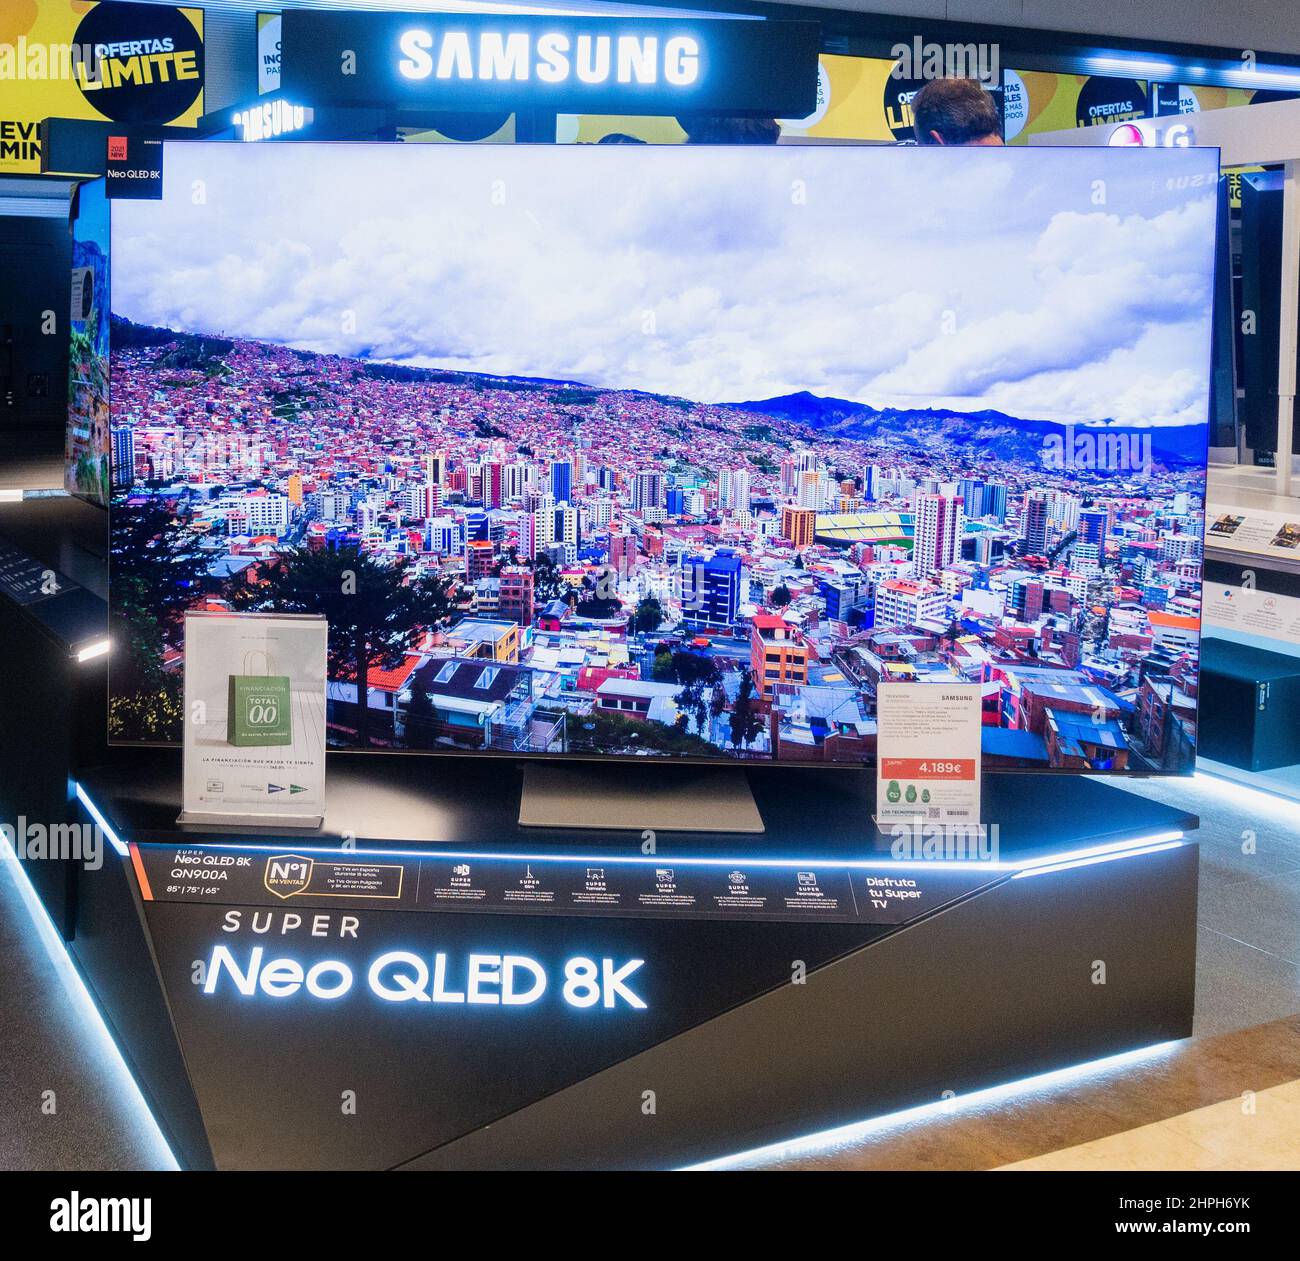 Televisor Samsung de alta definición Neo QLED 8K, pantalla de TV en tienda. Foto de stock